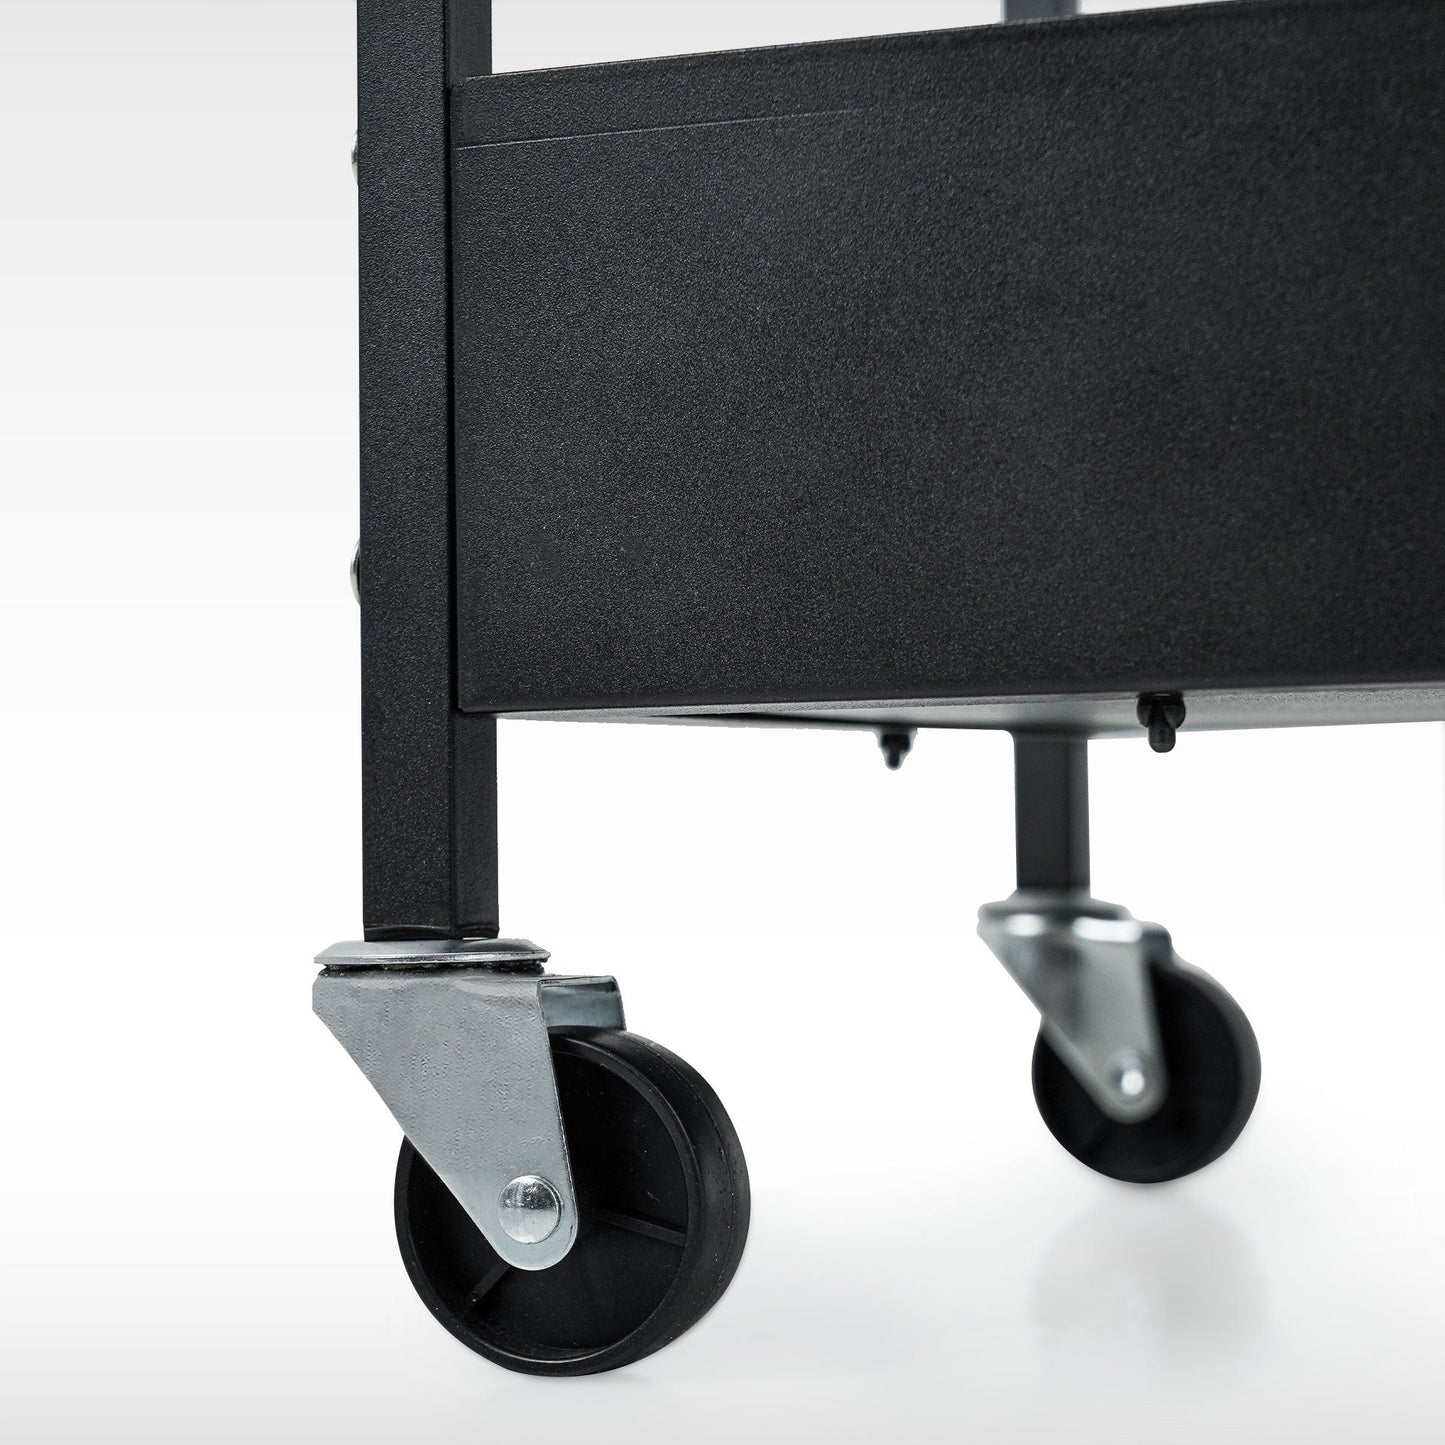 Carrito Trolley Multiusos con Ruedas - Mueble Práctico de Almacenamiento Portátil